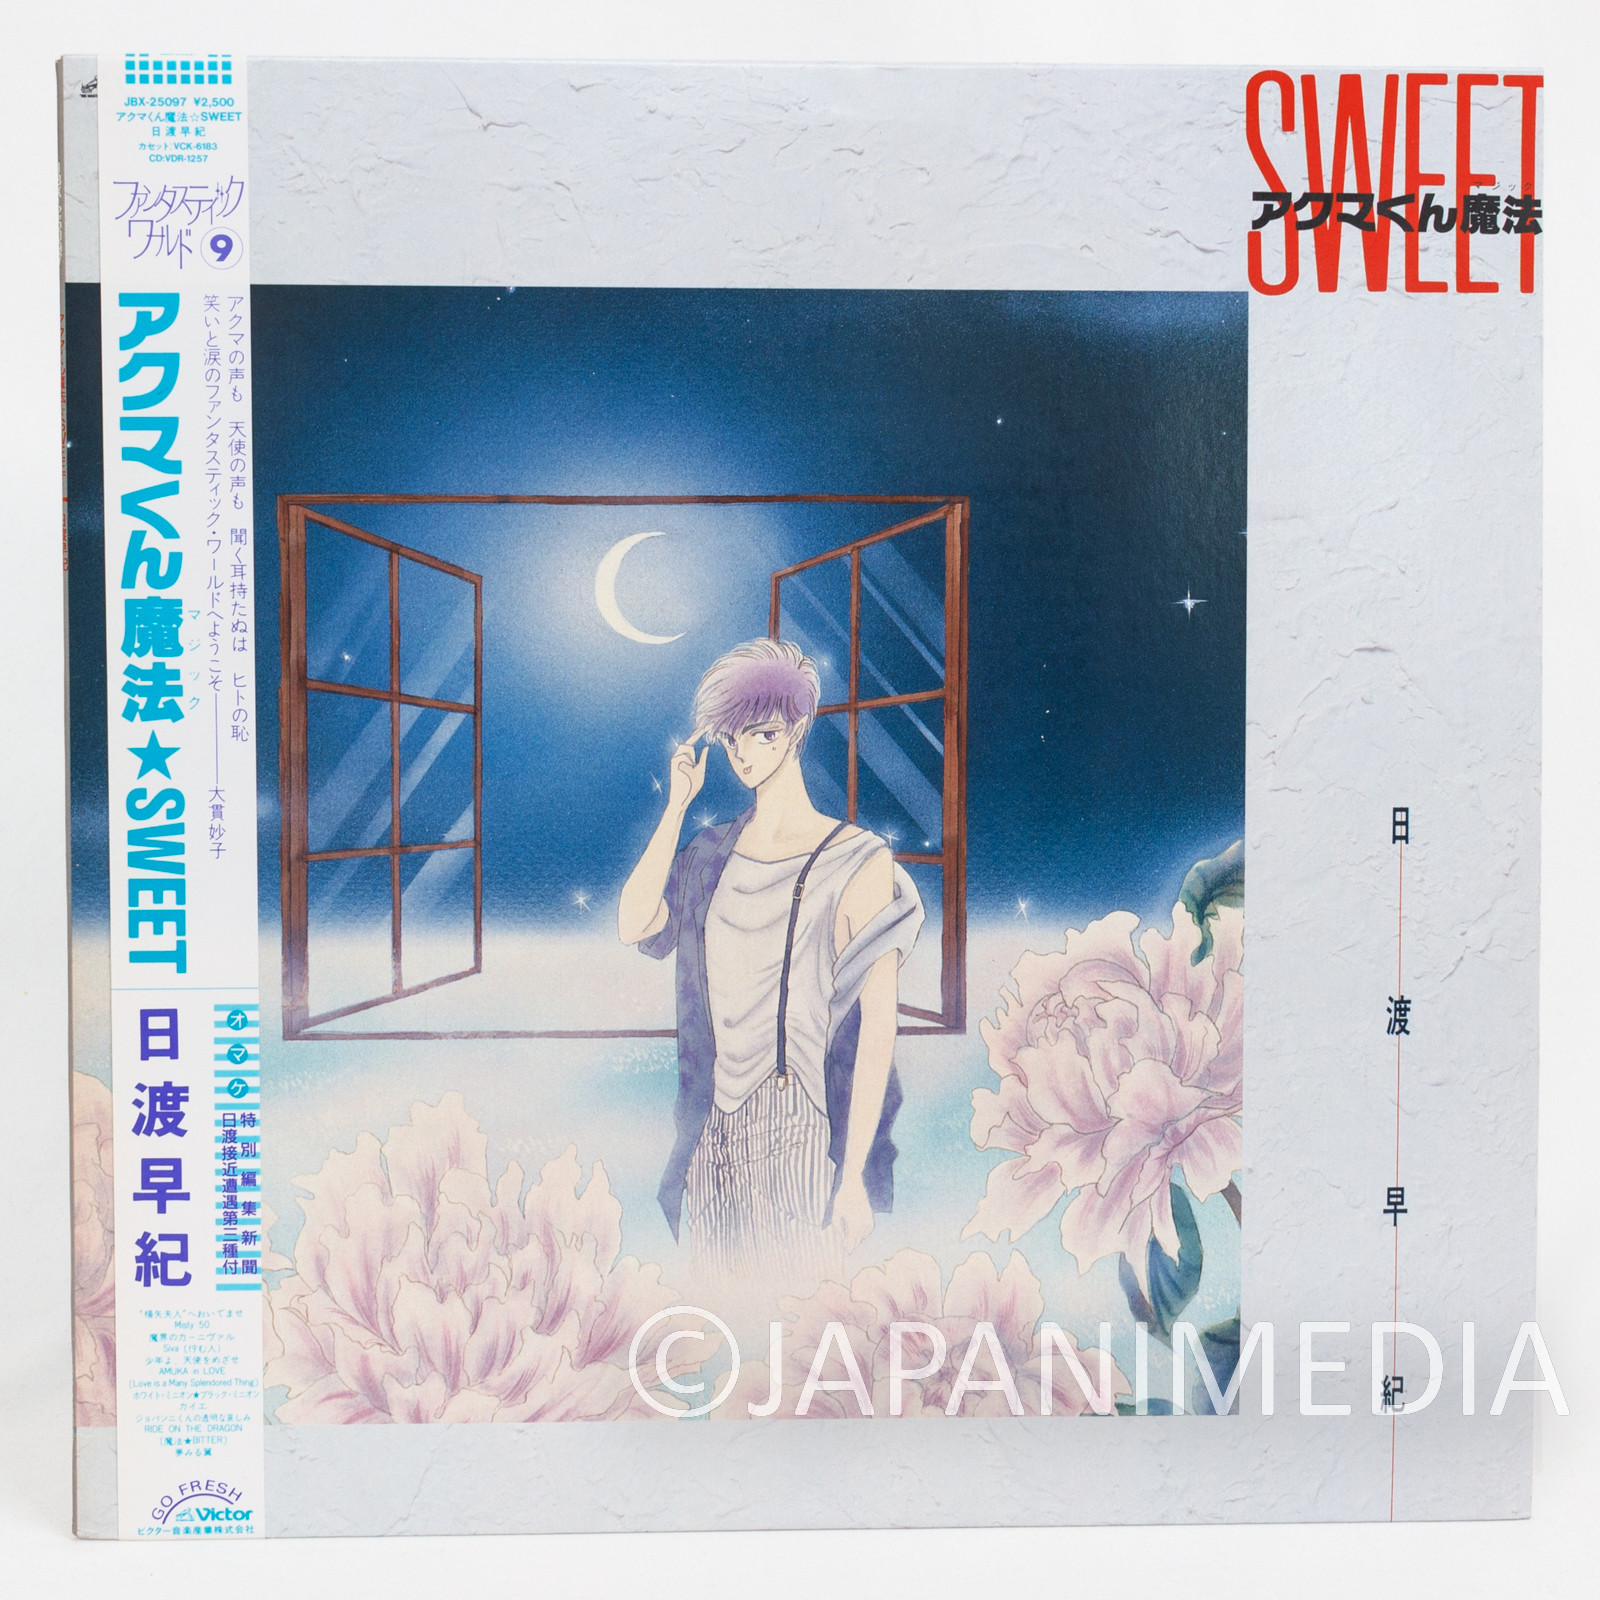 Akuma-kun Magic Sweet Soundtrack LP Vinyl Record JBX-25097